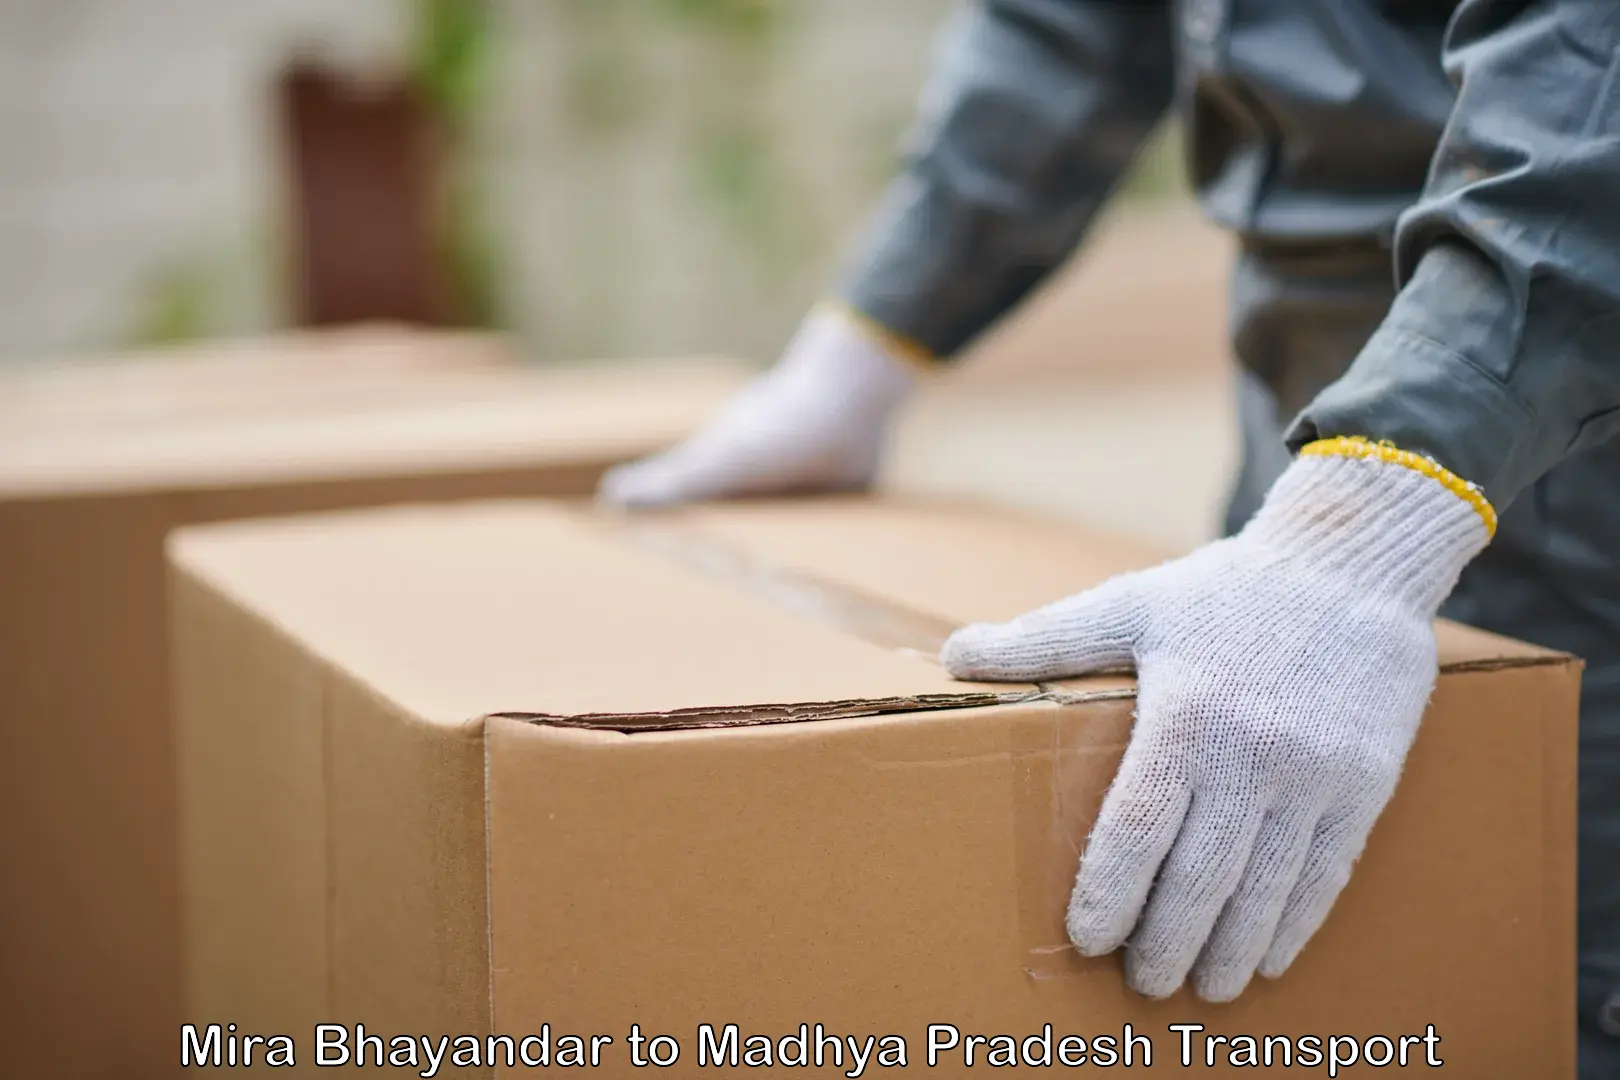 Furniture transport service Mira Bhayandar to Nagda